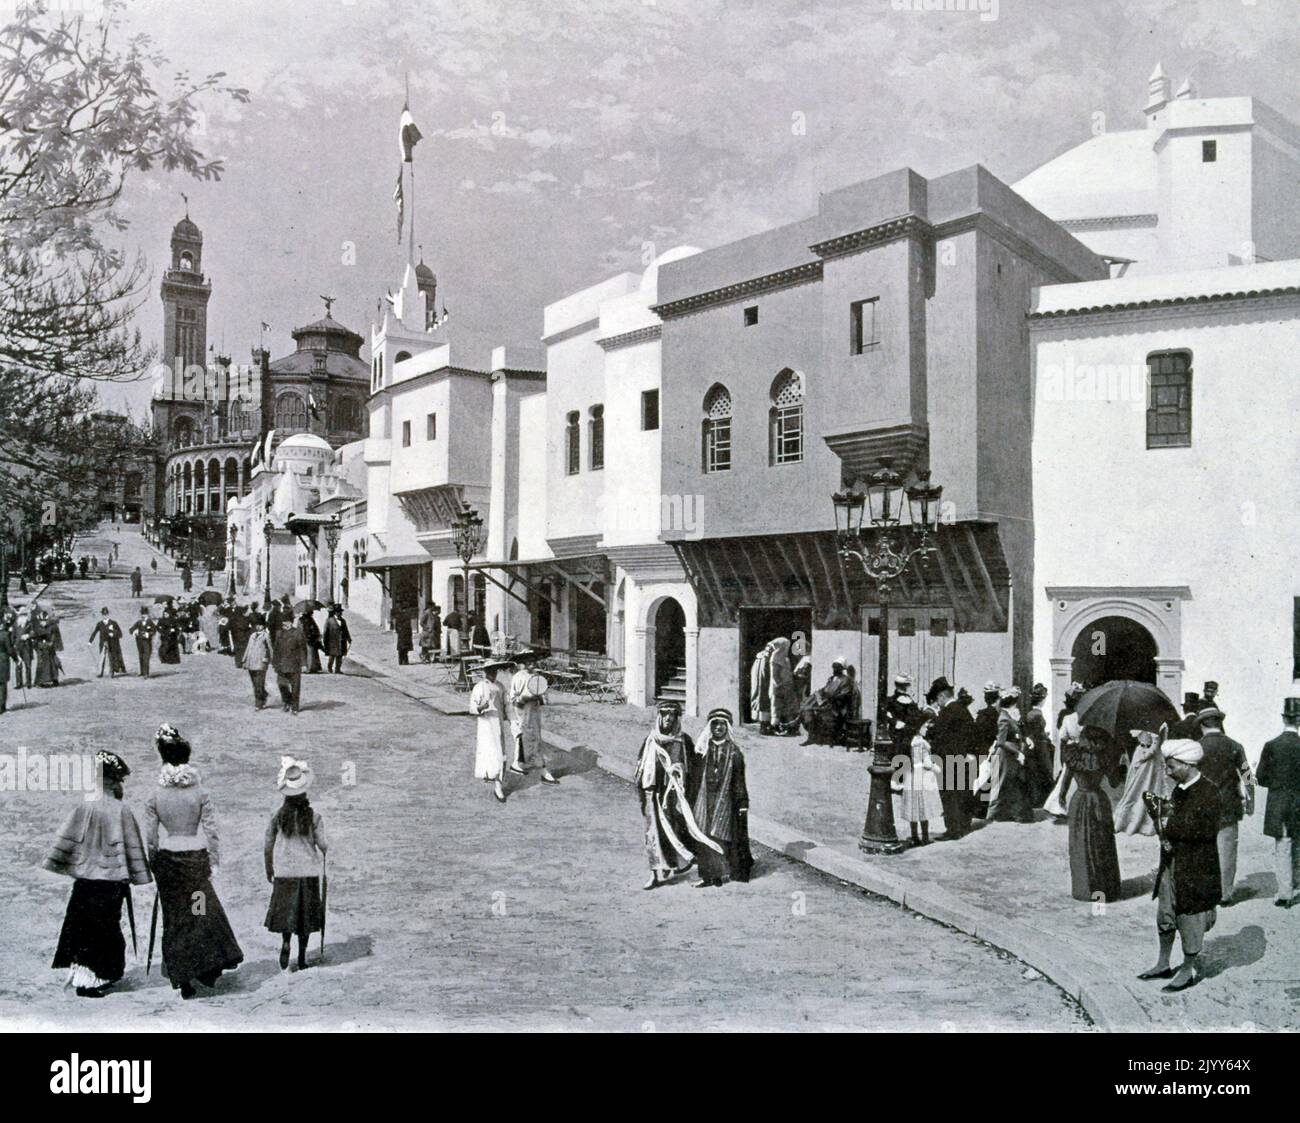 Exposition universelle (Foire mondiale) Paris, 1900; Photographie noir et blanc de l'exposition d'Algérie. Banque D'Images